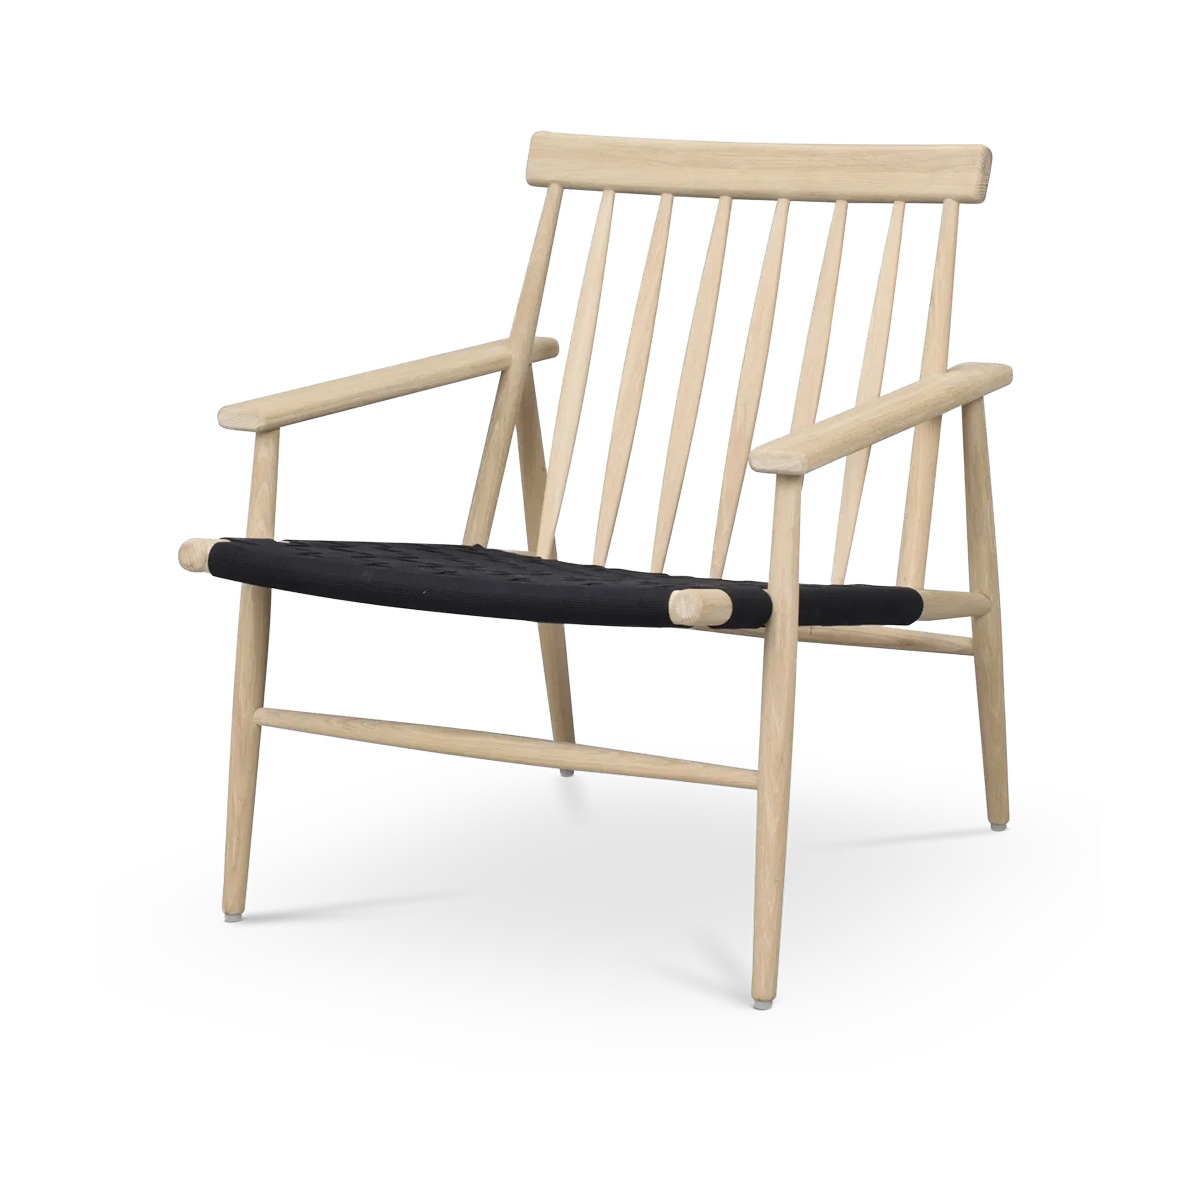 Canwood houten fauteuil whitewash - zwarte zitting